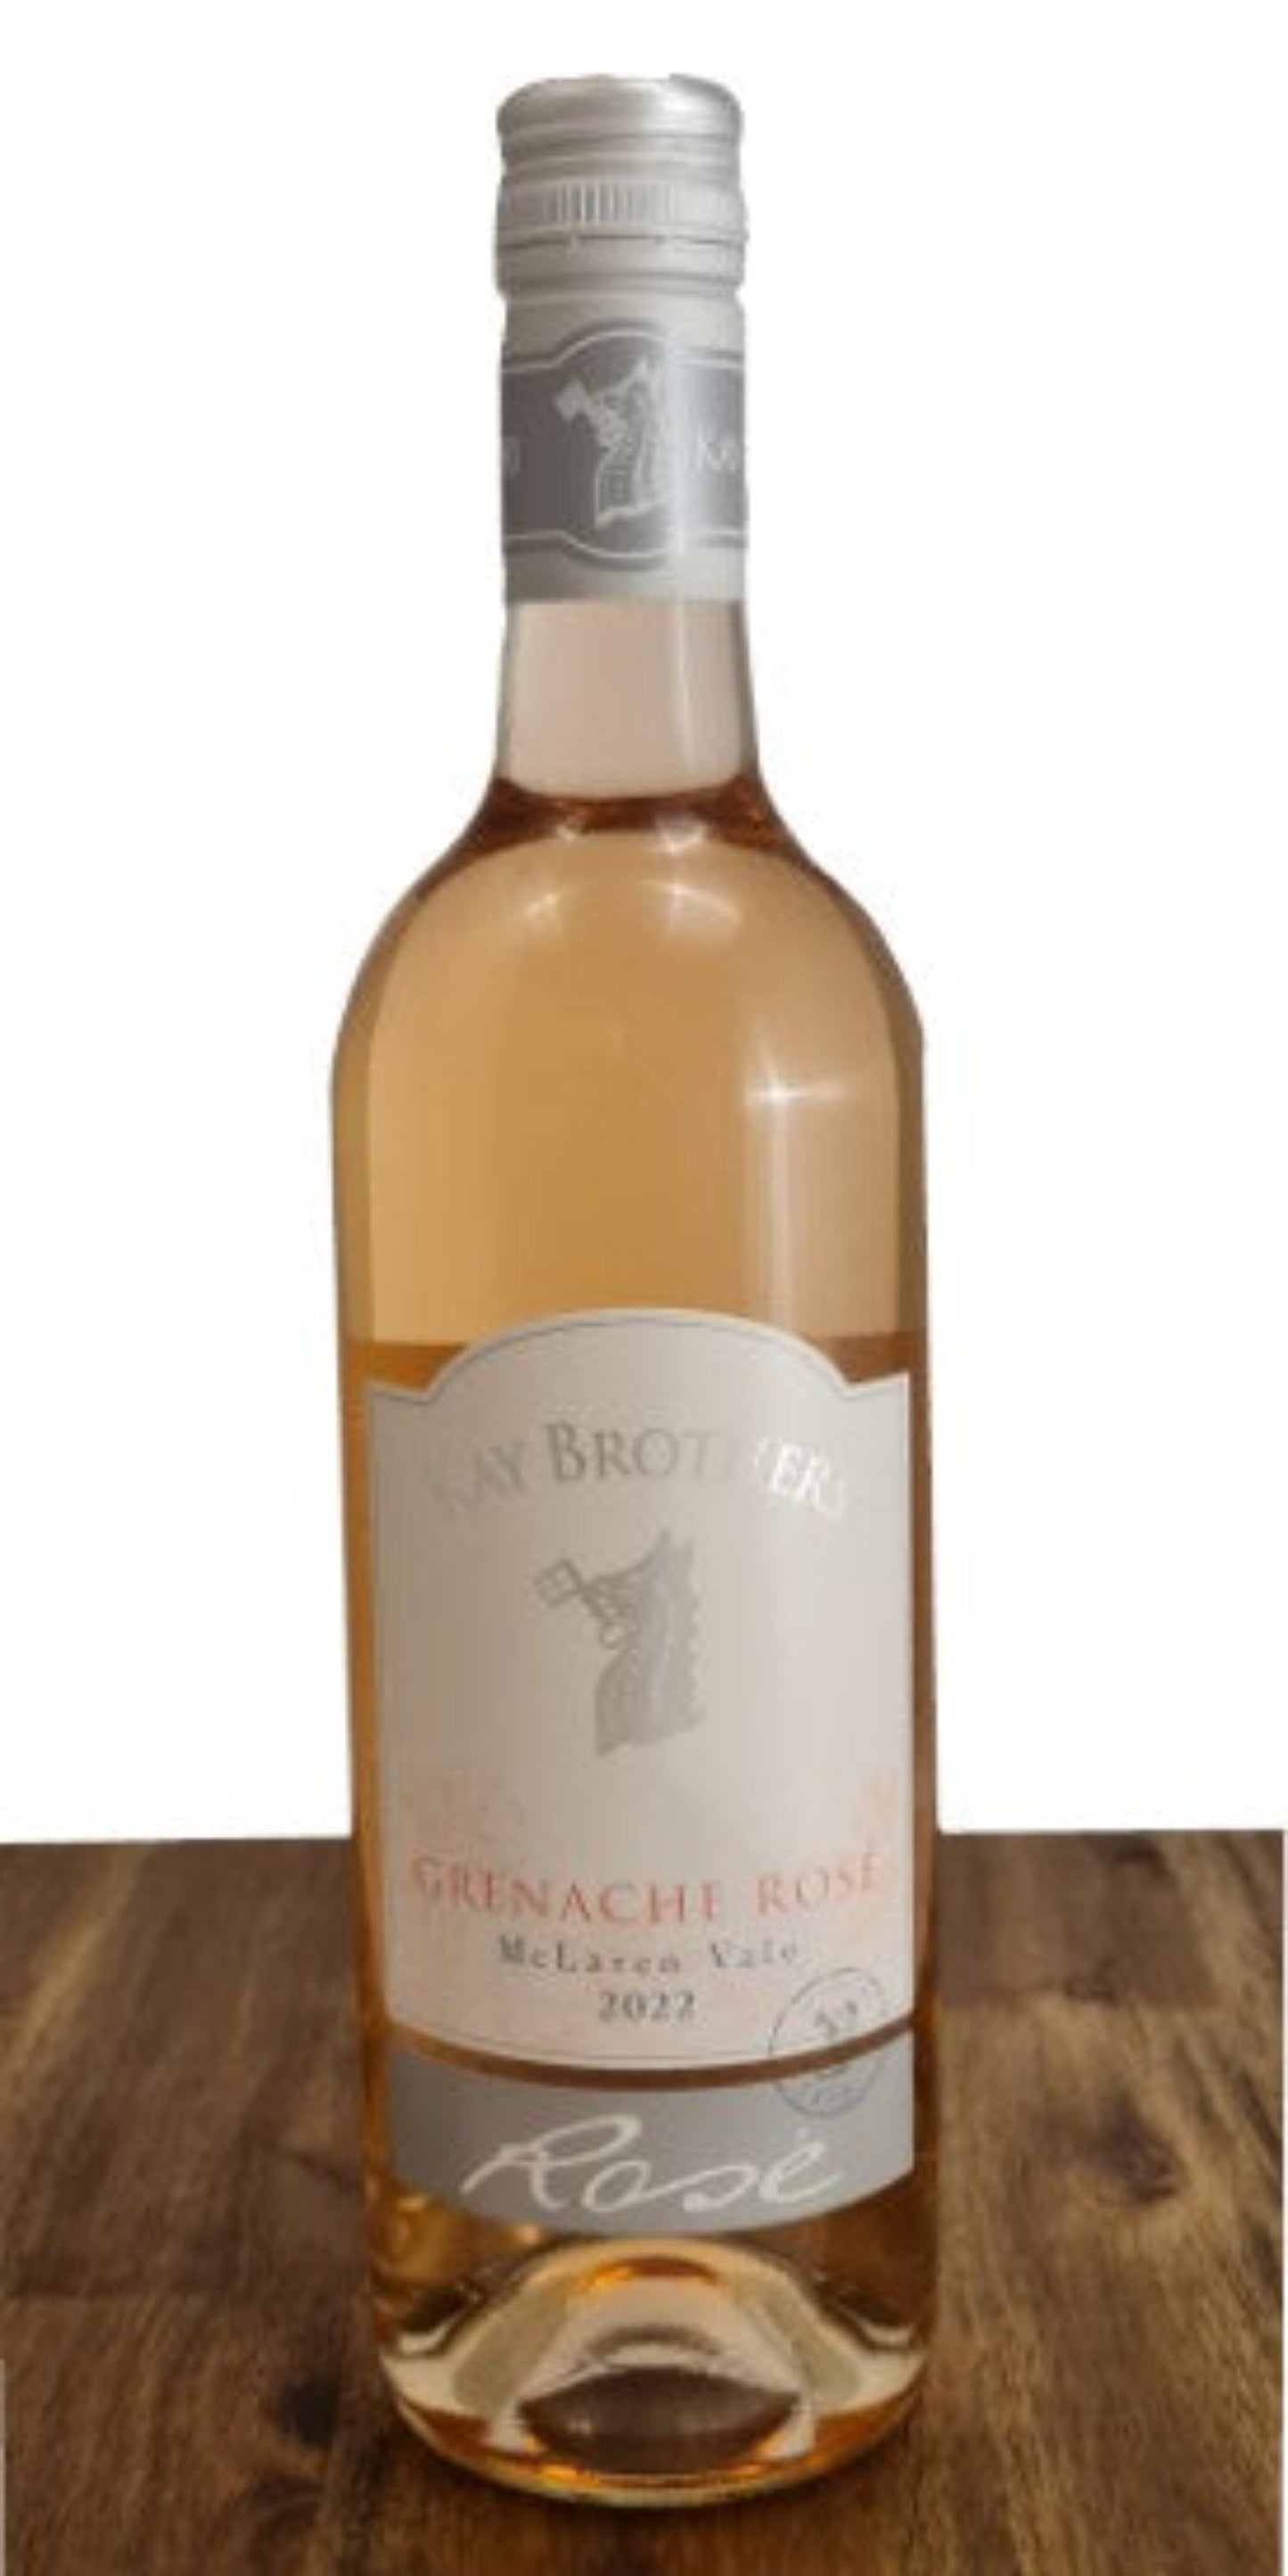 Grenache Rose 2022 - Premium Wine from San Telmo Cellars - Just $22.90! Shop now at San Telmo Cellars